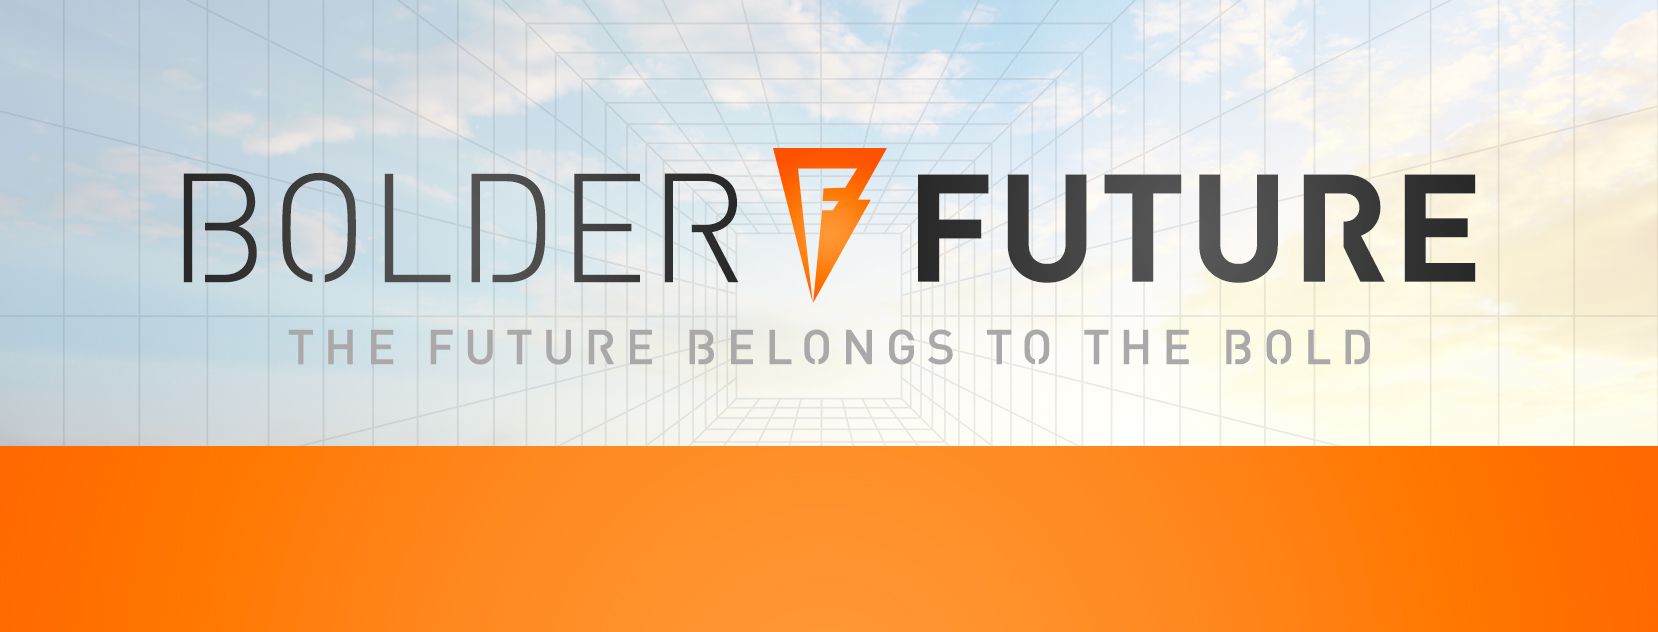 Bolder Future Marketing company logo